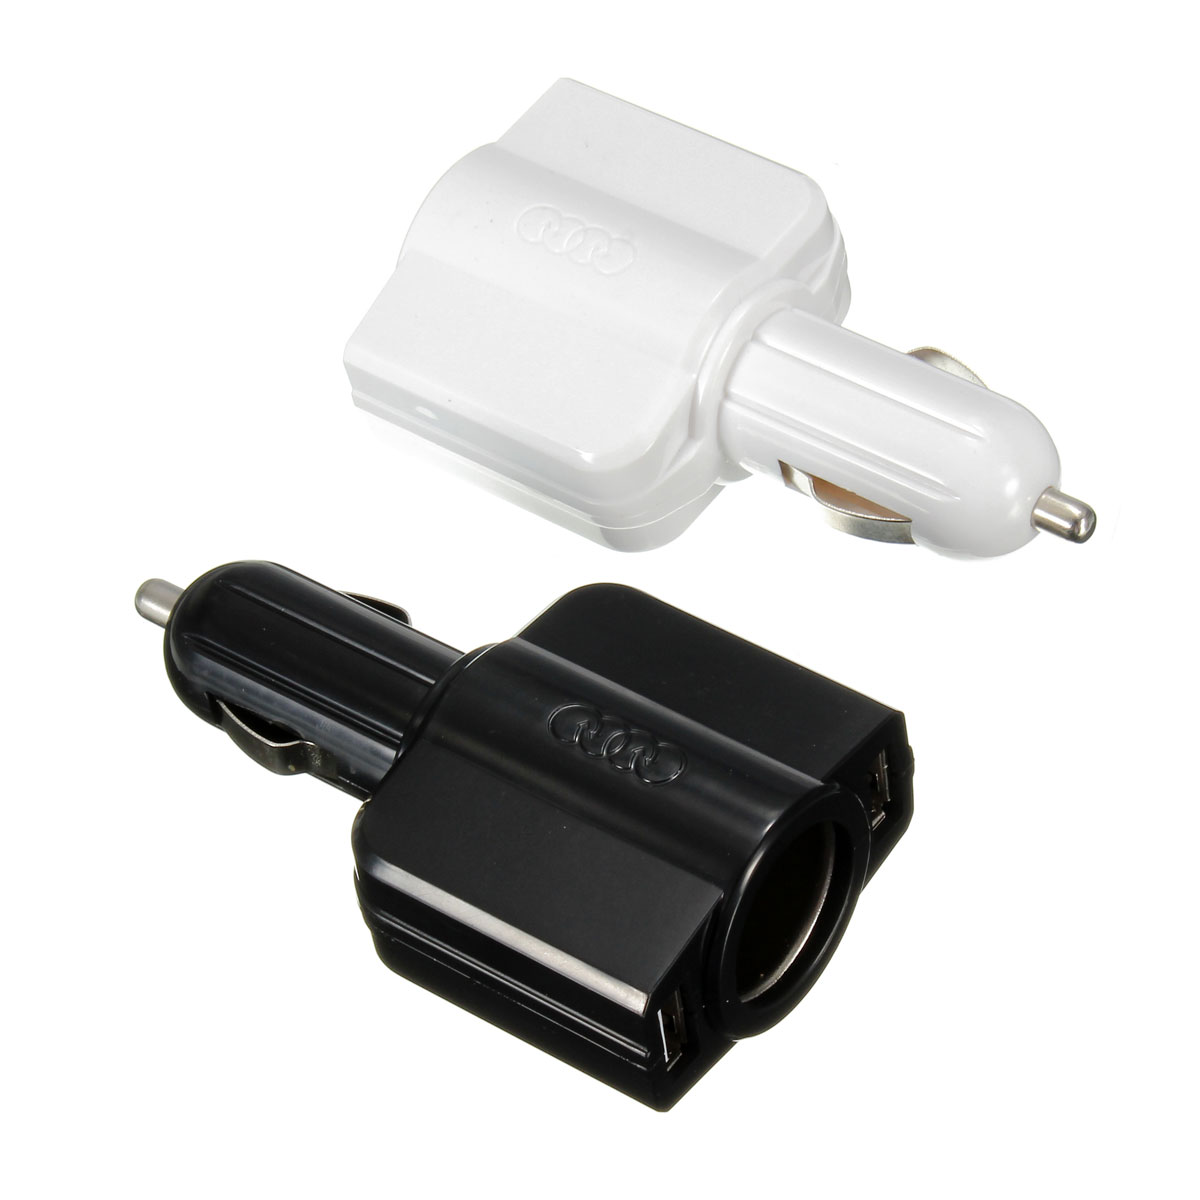   2 () USB      5  1.5A